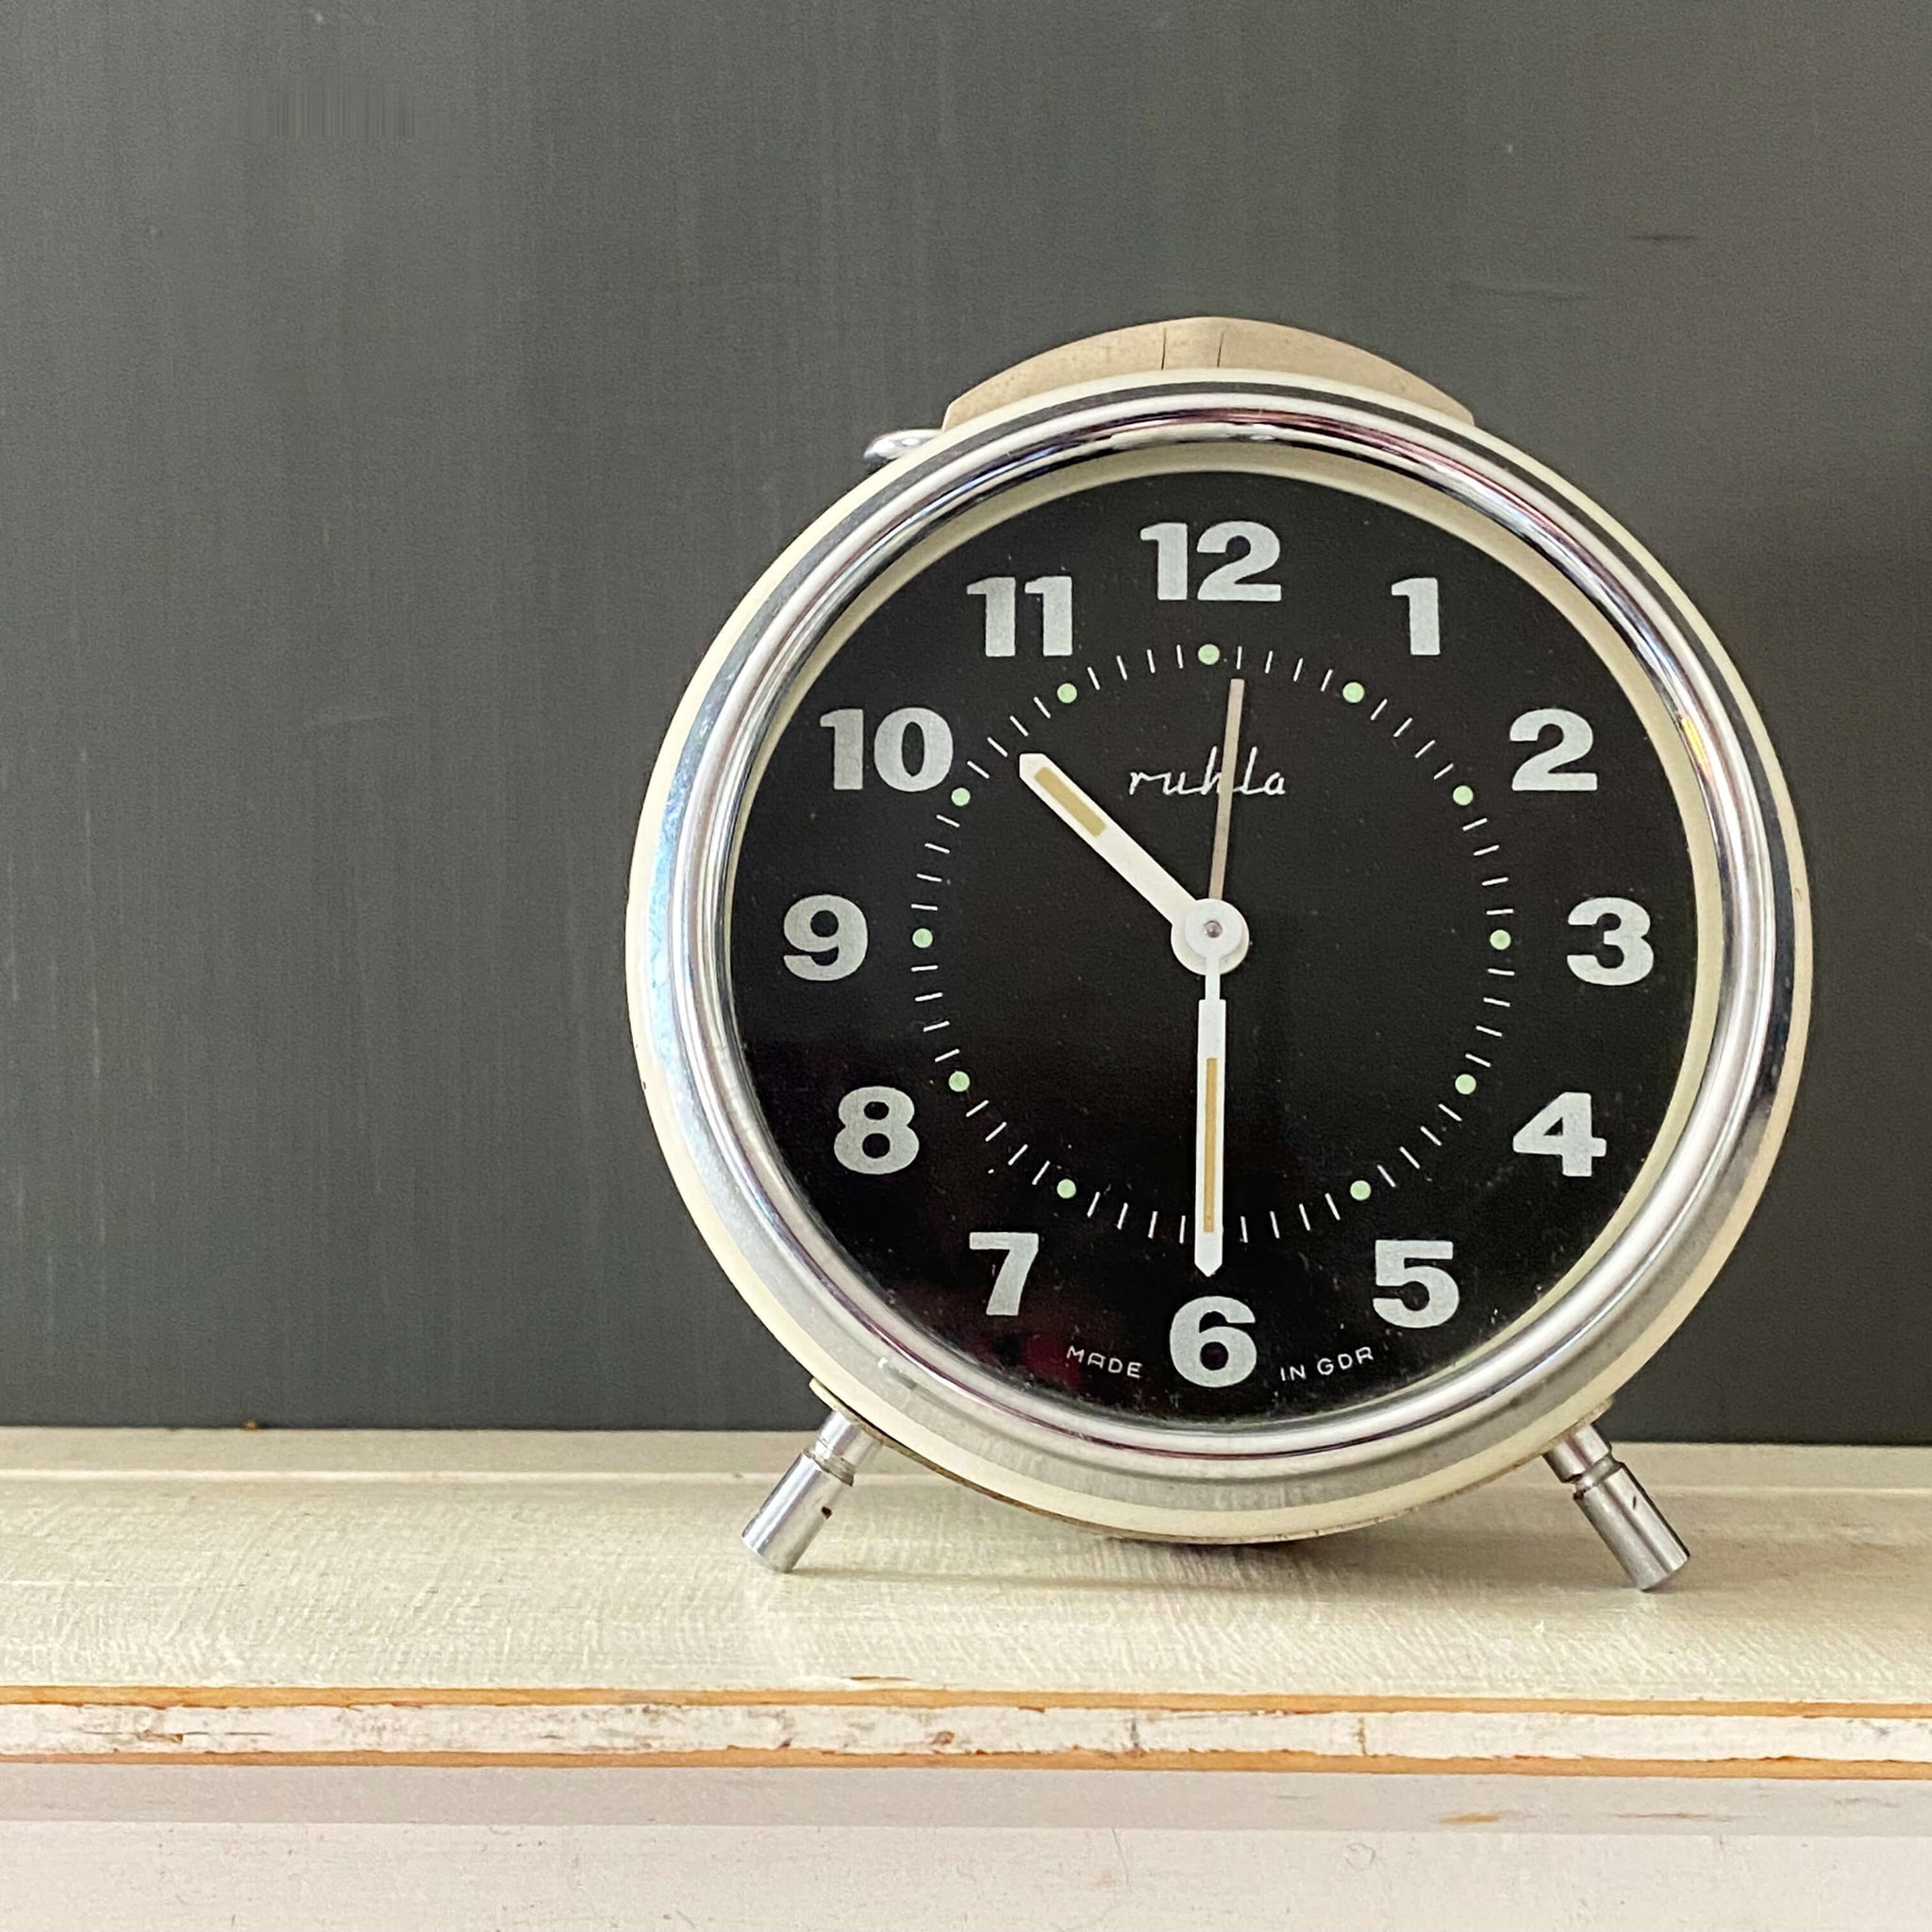 Rare Vintage Midcentury German Alarm Clock by Ruhla - Working Condition circa 1960s-1980s